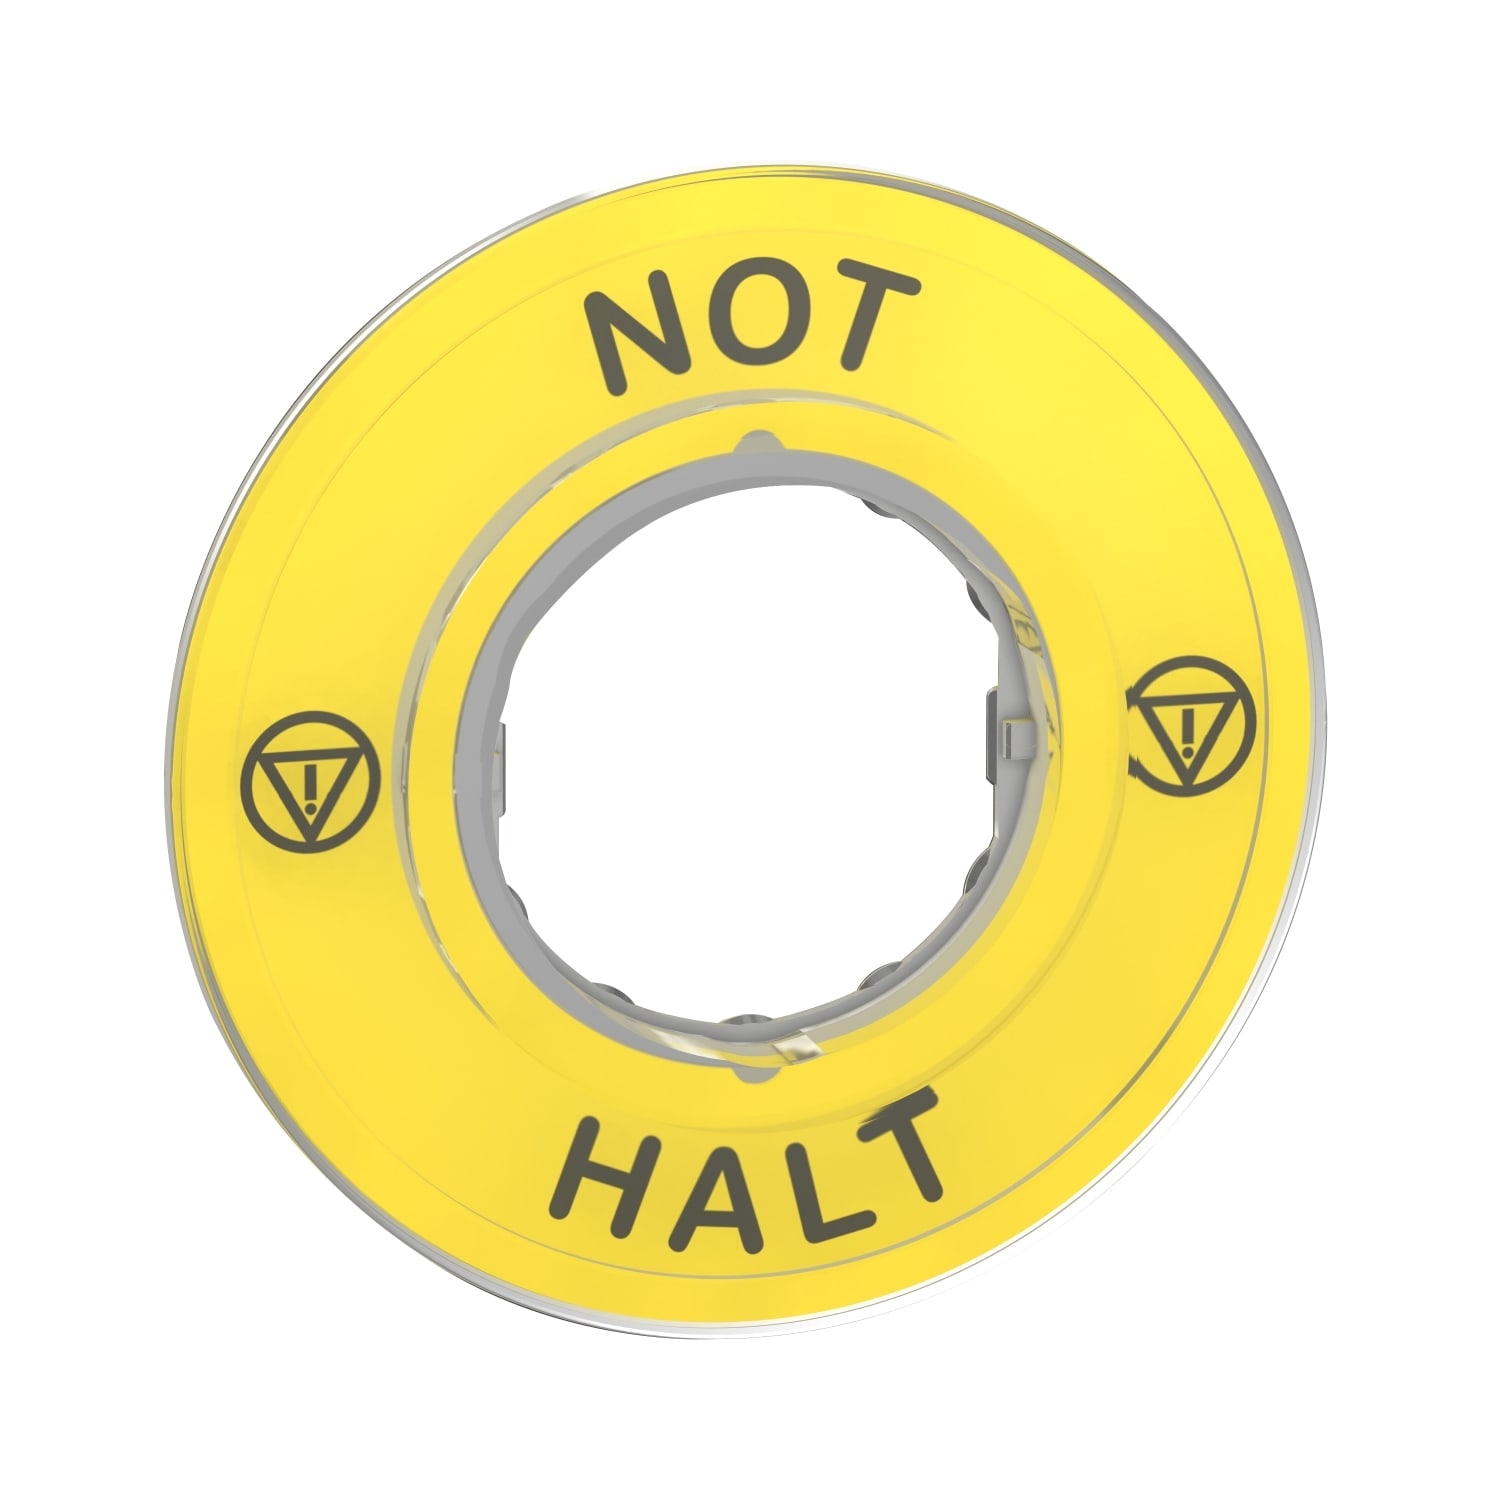 Schneider Electric - Harmony - etiquette circulaire jaune 3D - D60 - Not-Halt